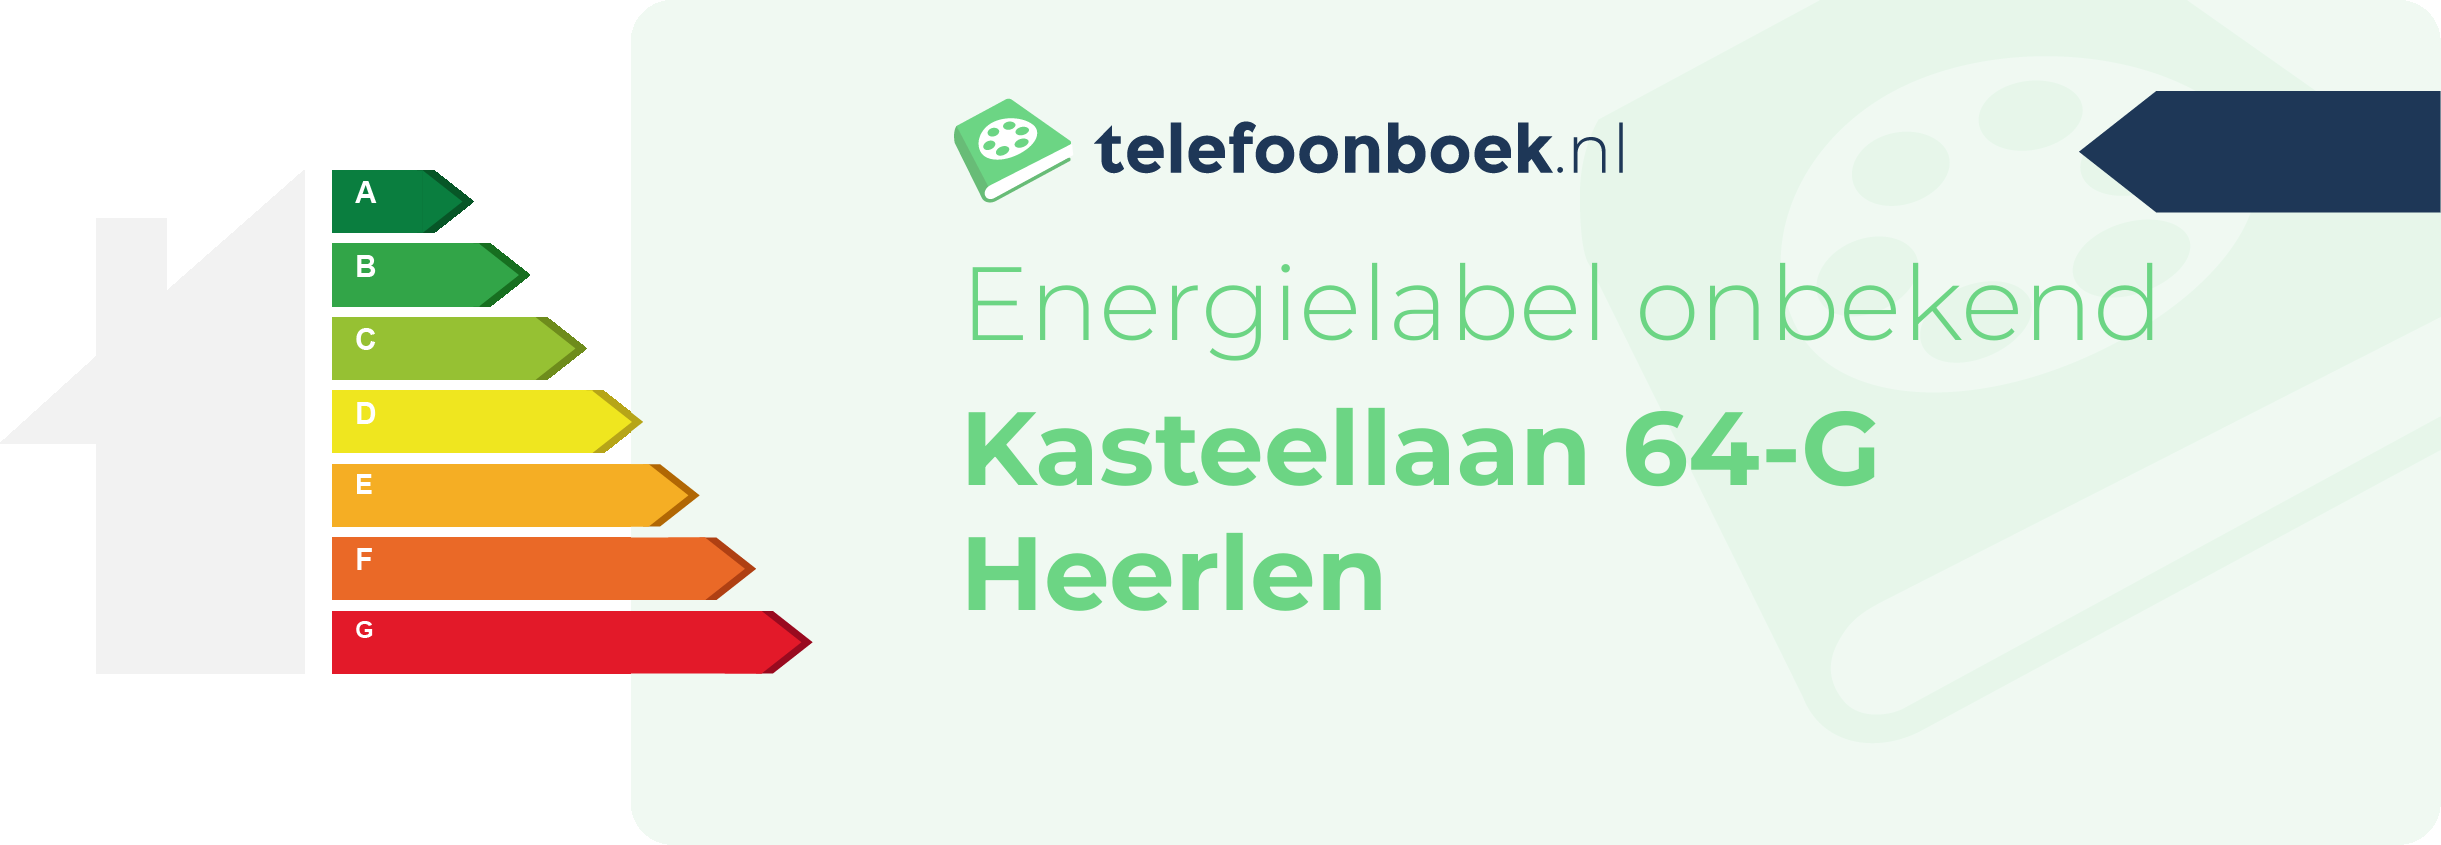 Energielabel Kasteellaan 64-G Heerlen